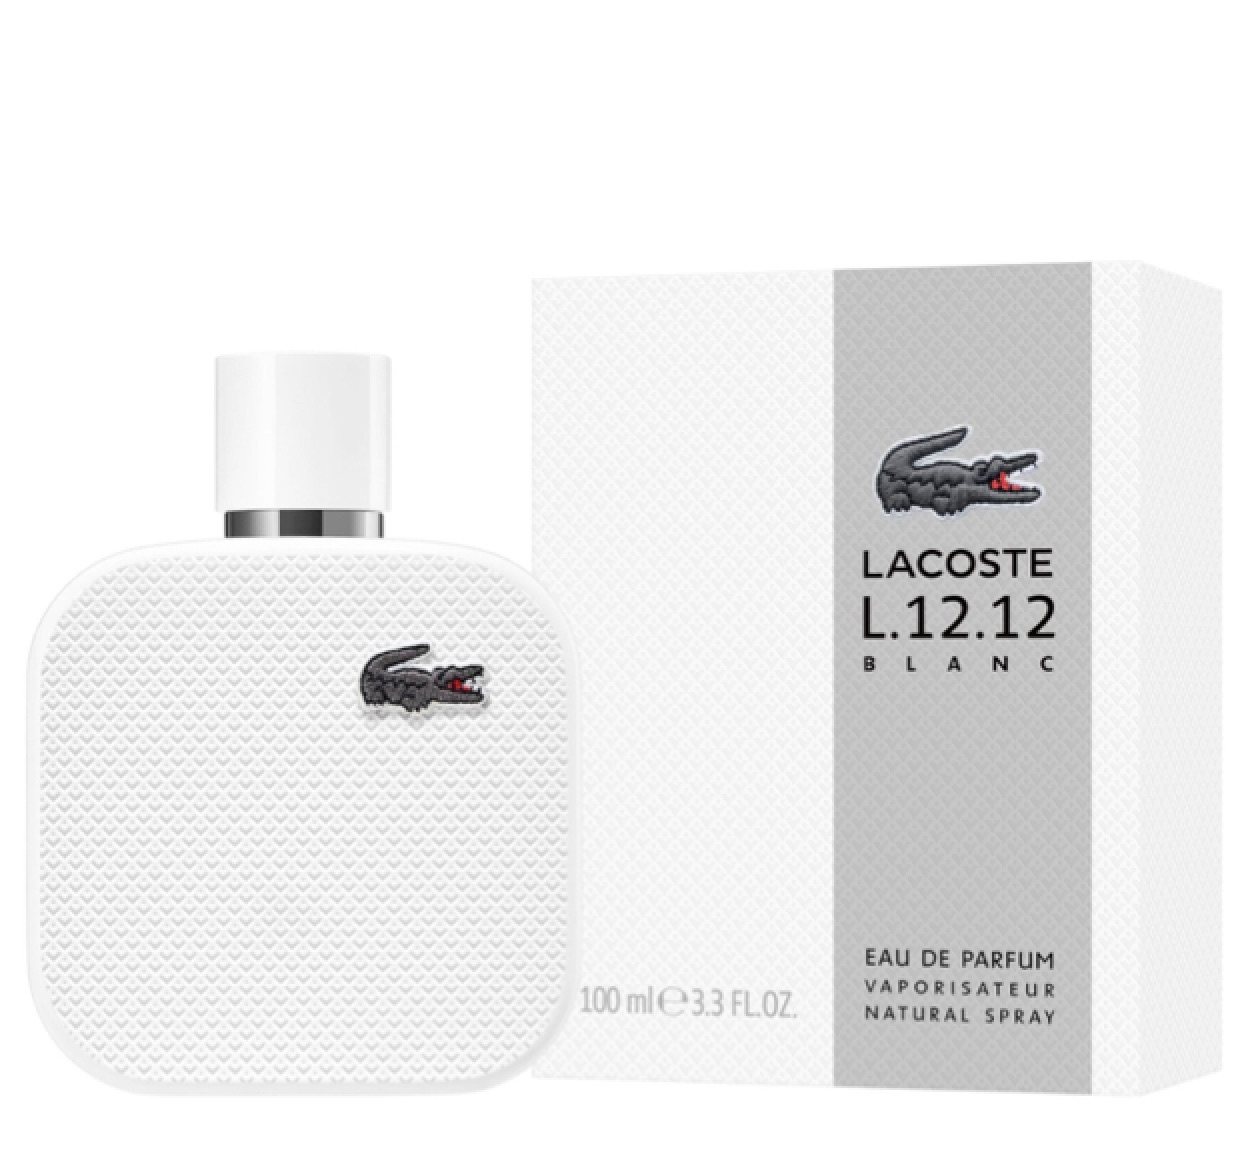 Lacoste L.12.12 Blanc Eau de Parfum 100ml – Perfume Essence